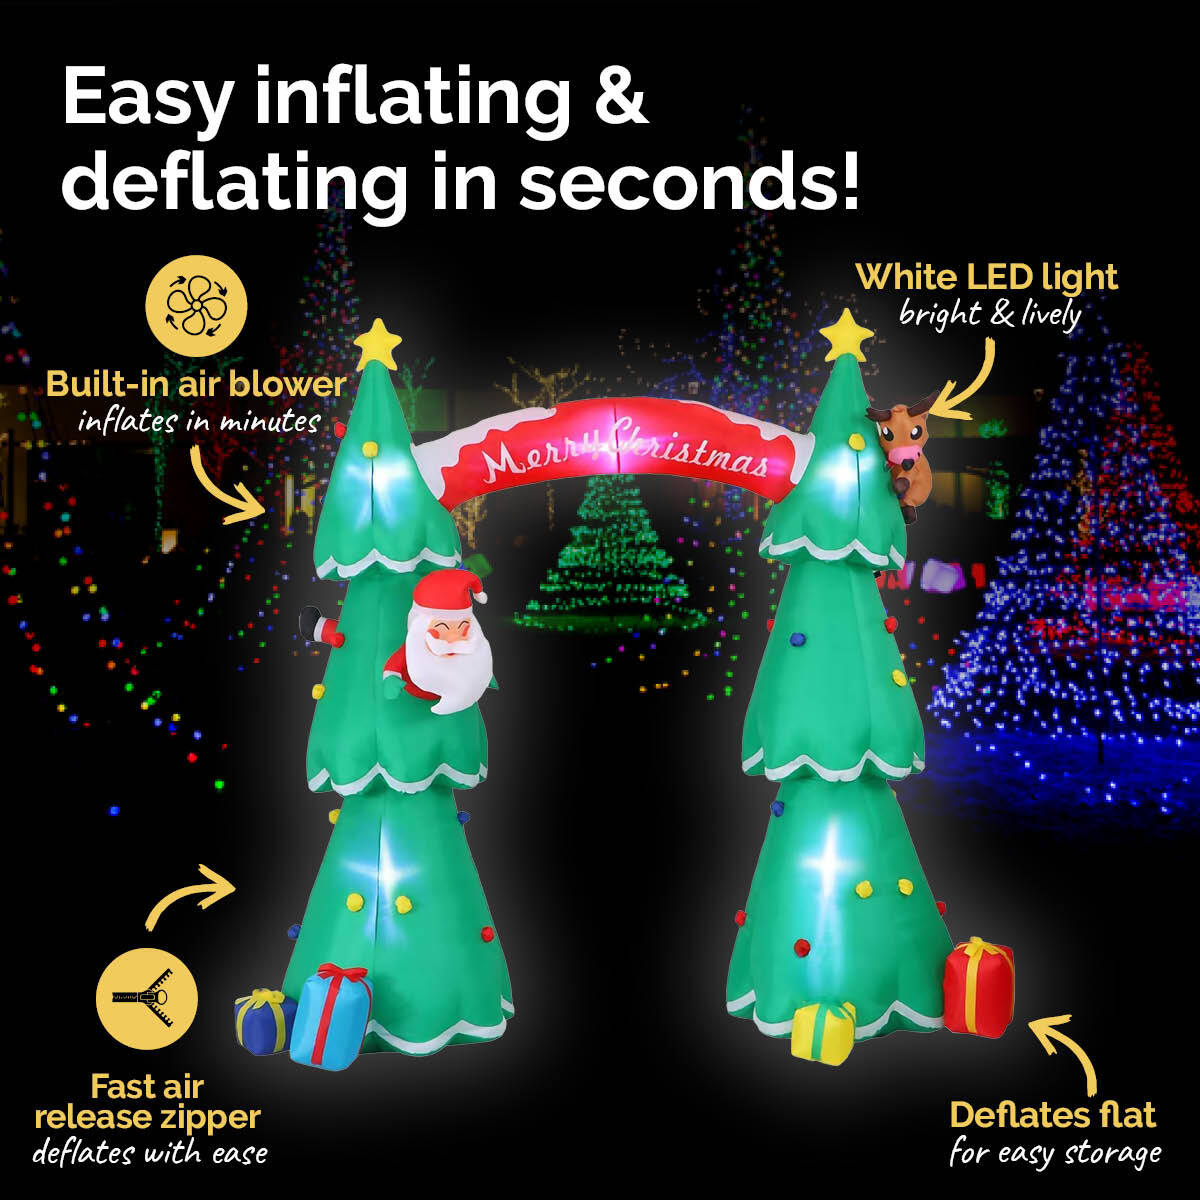 Christmas By Sas 3m x 2.4m Christmas Tree Arch Self Inflating LED Lights - SILBERSHELL